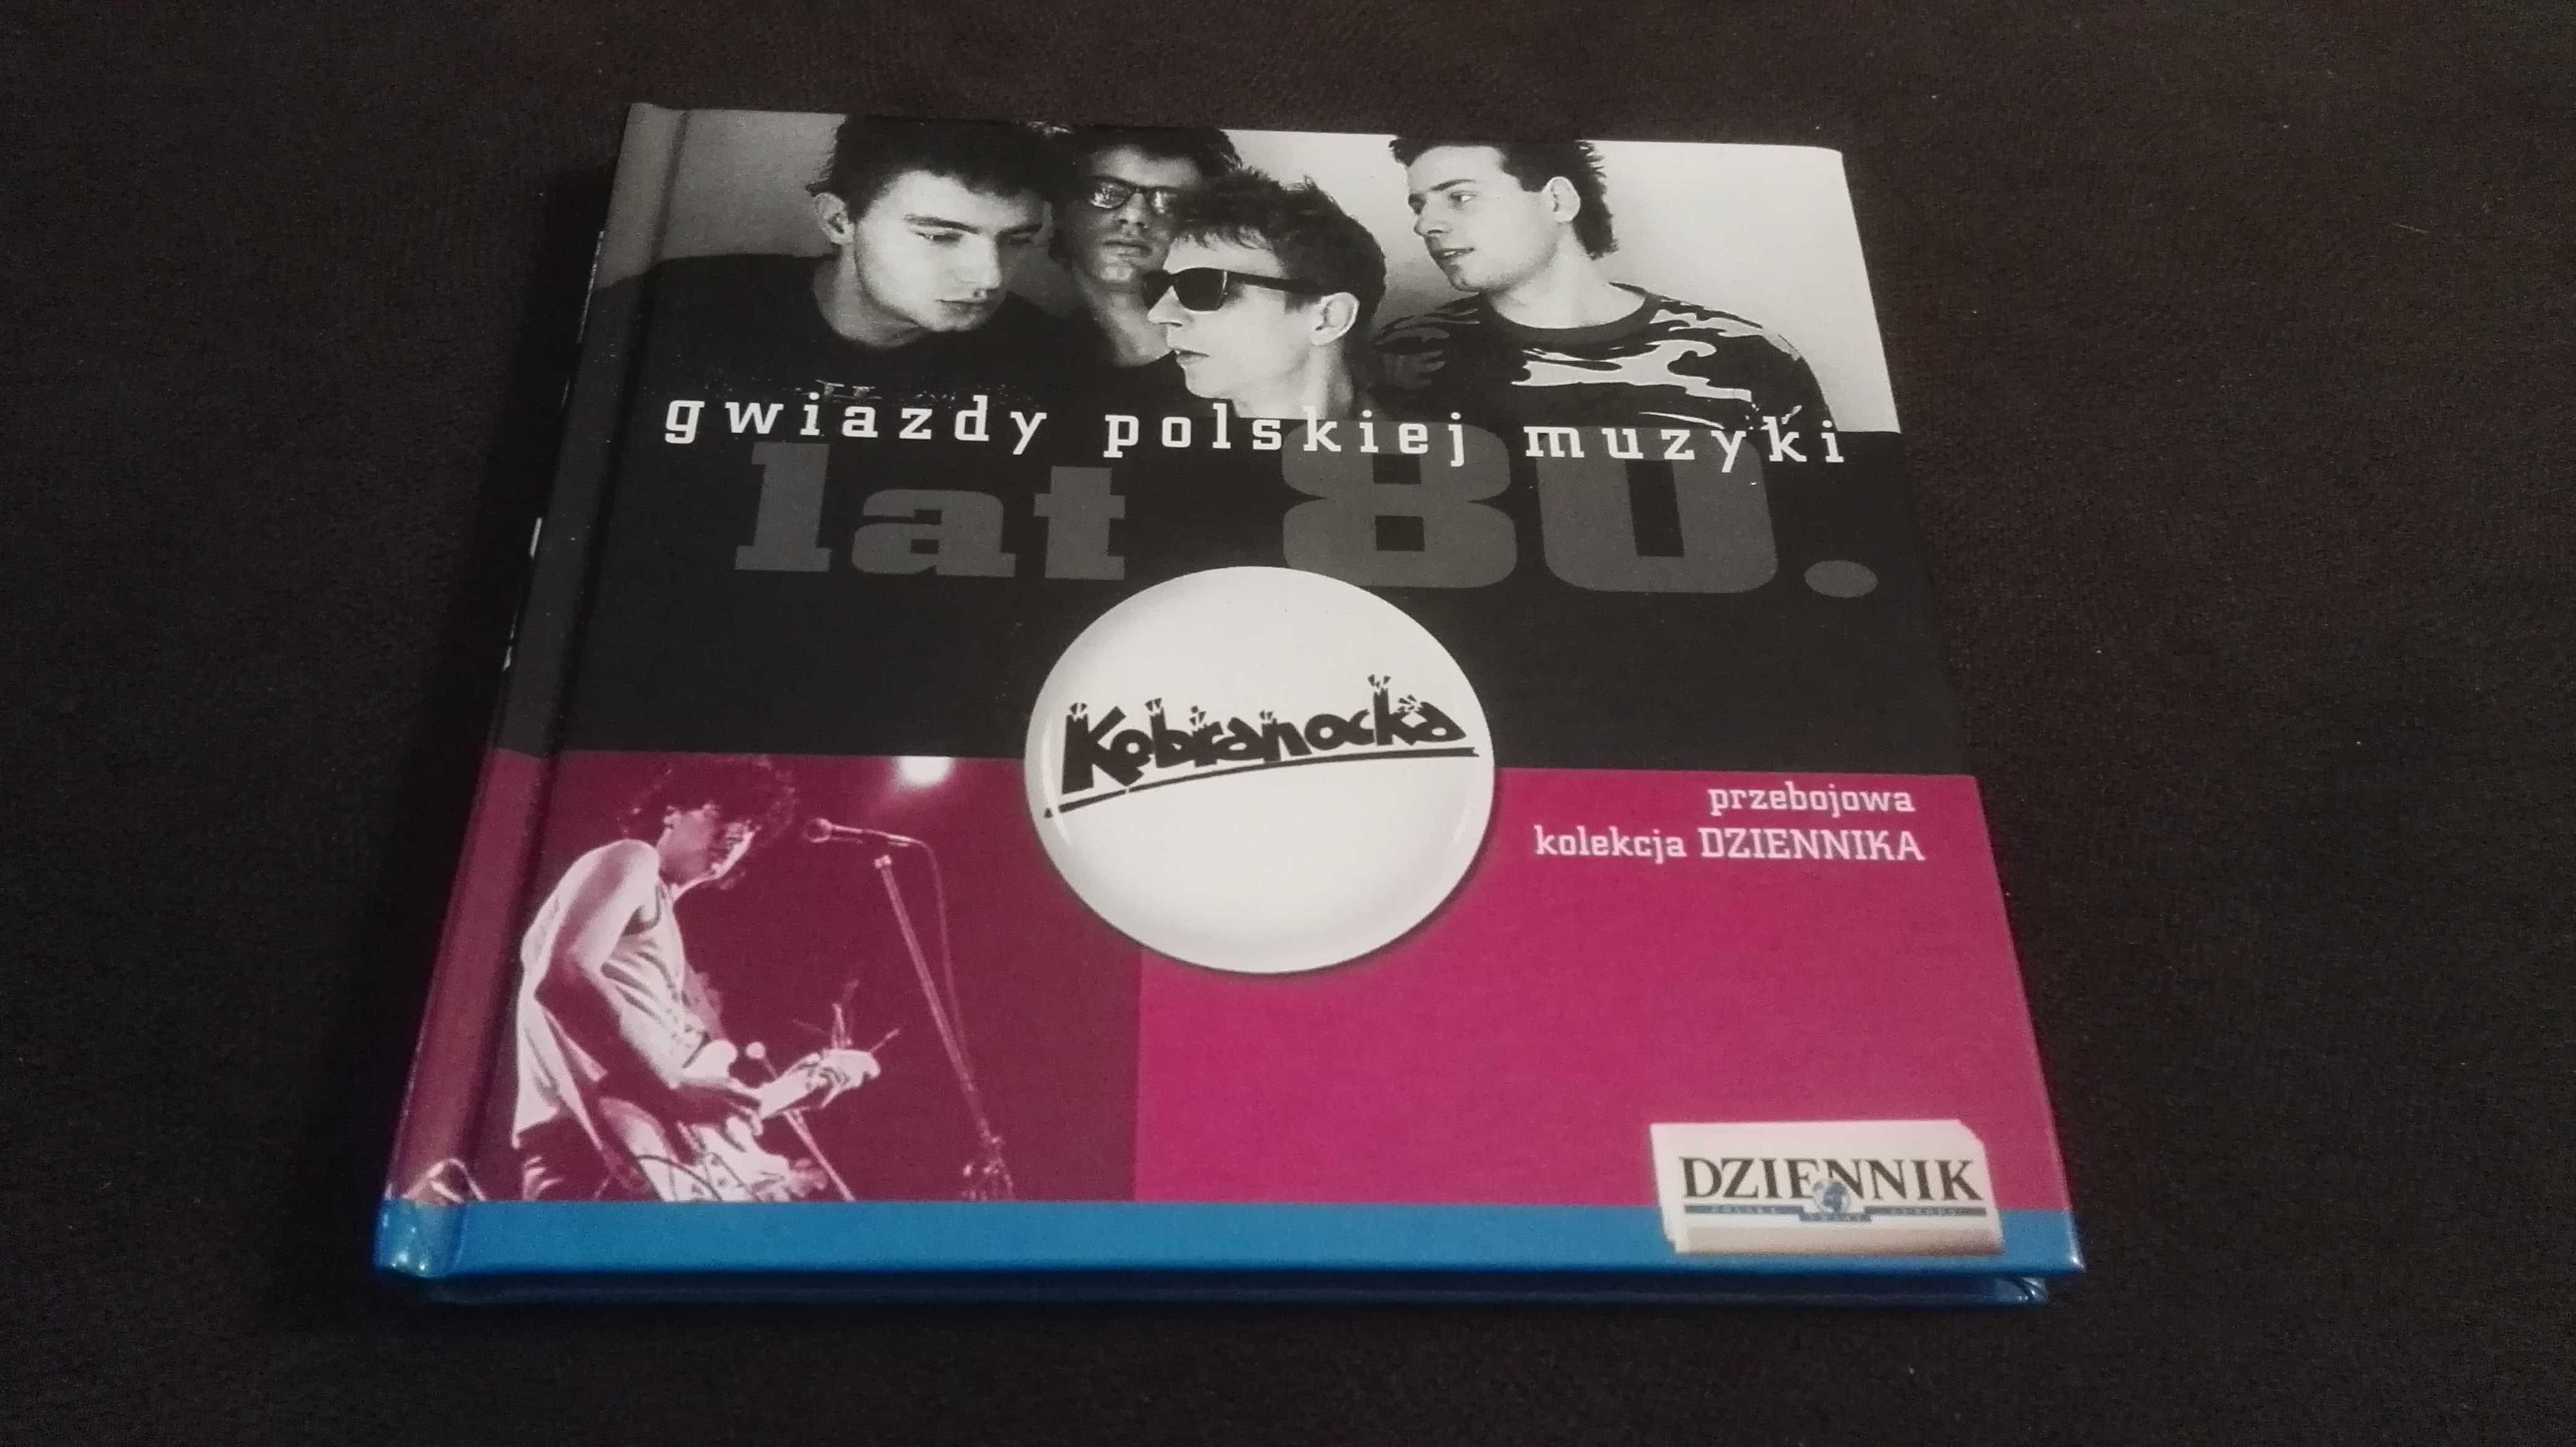 Płyta CD Kobranocka Gwiazdy polskiej muzyki 2007 Kolekcja Dziennika